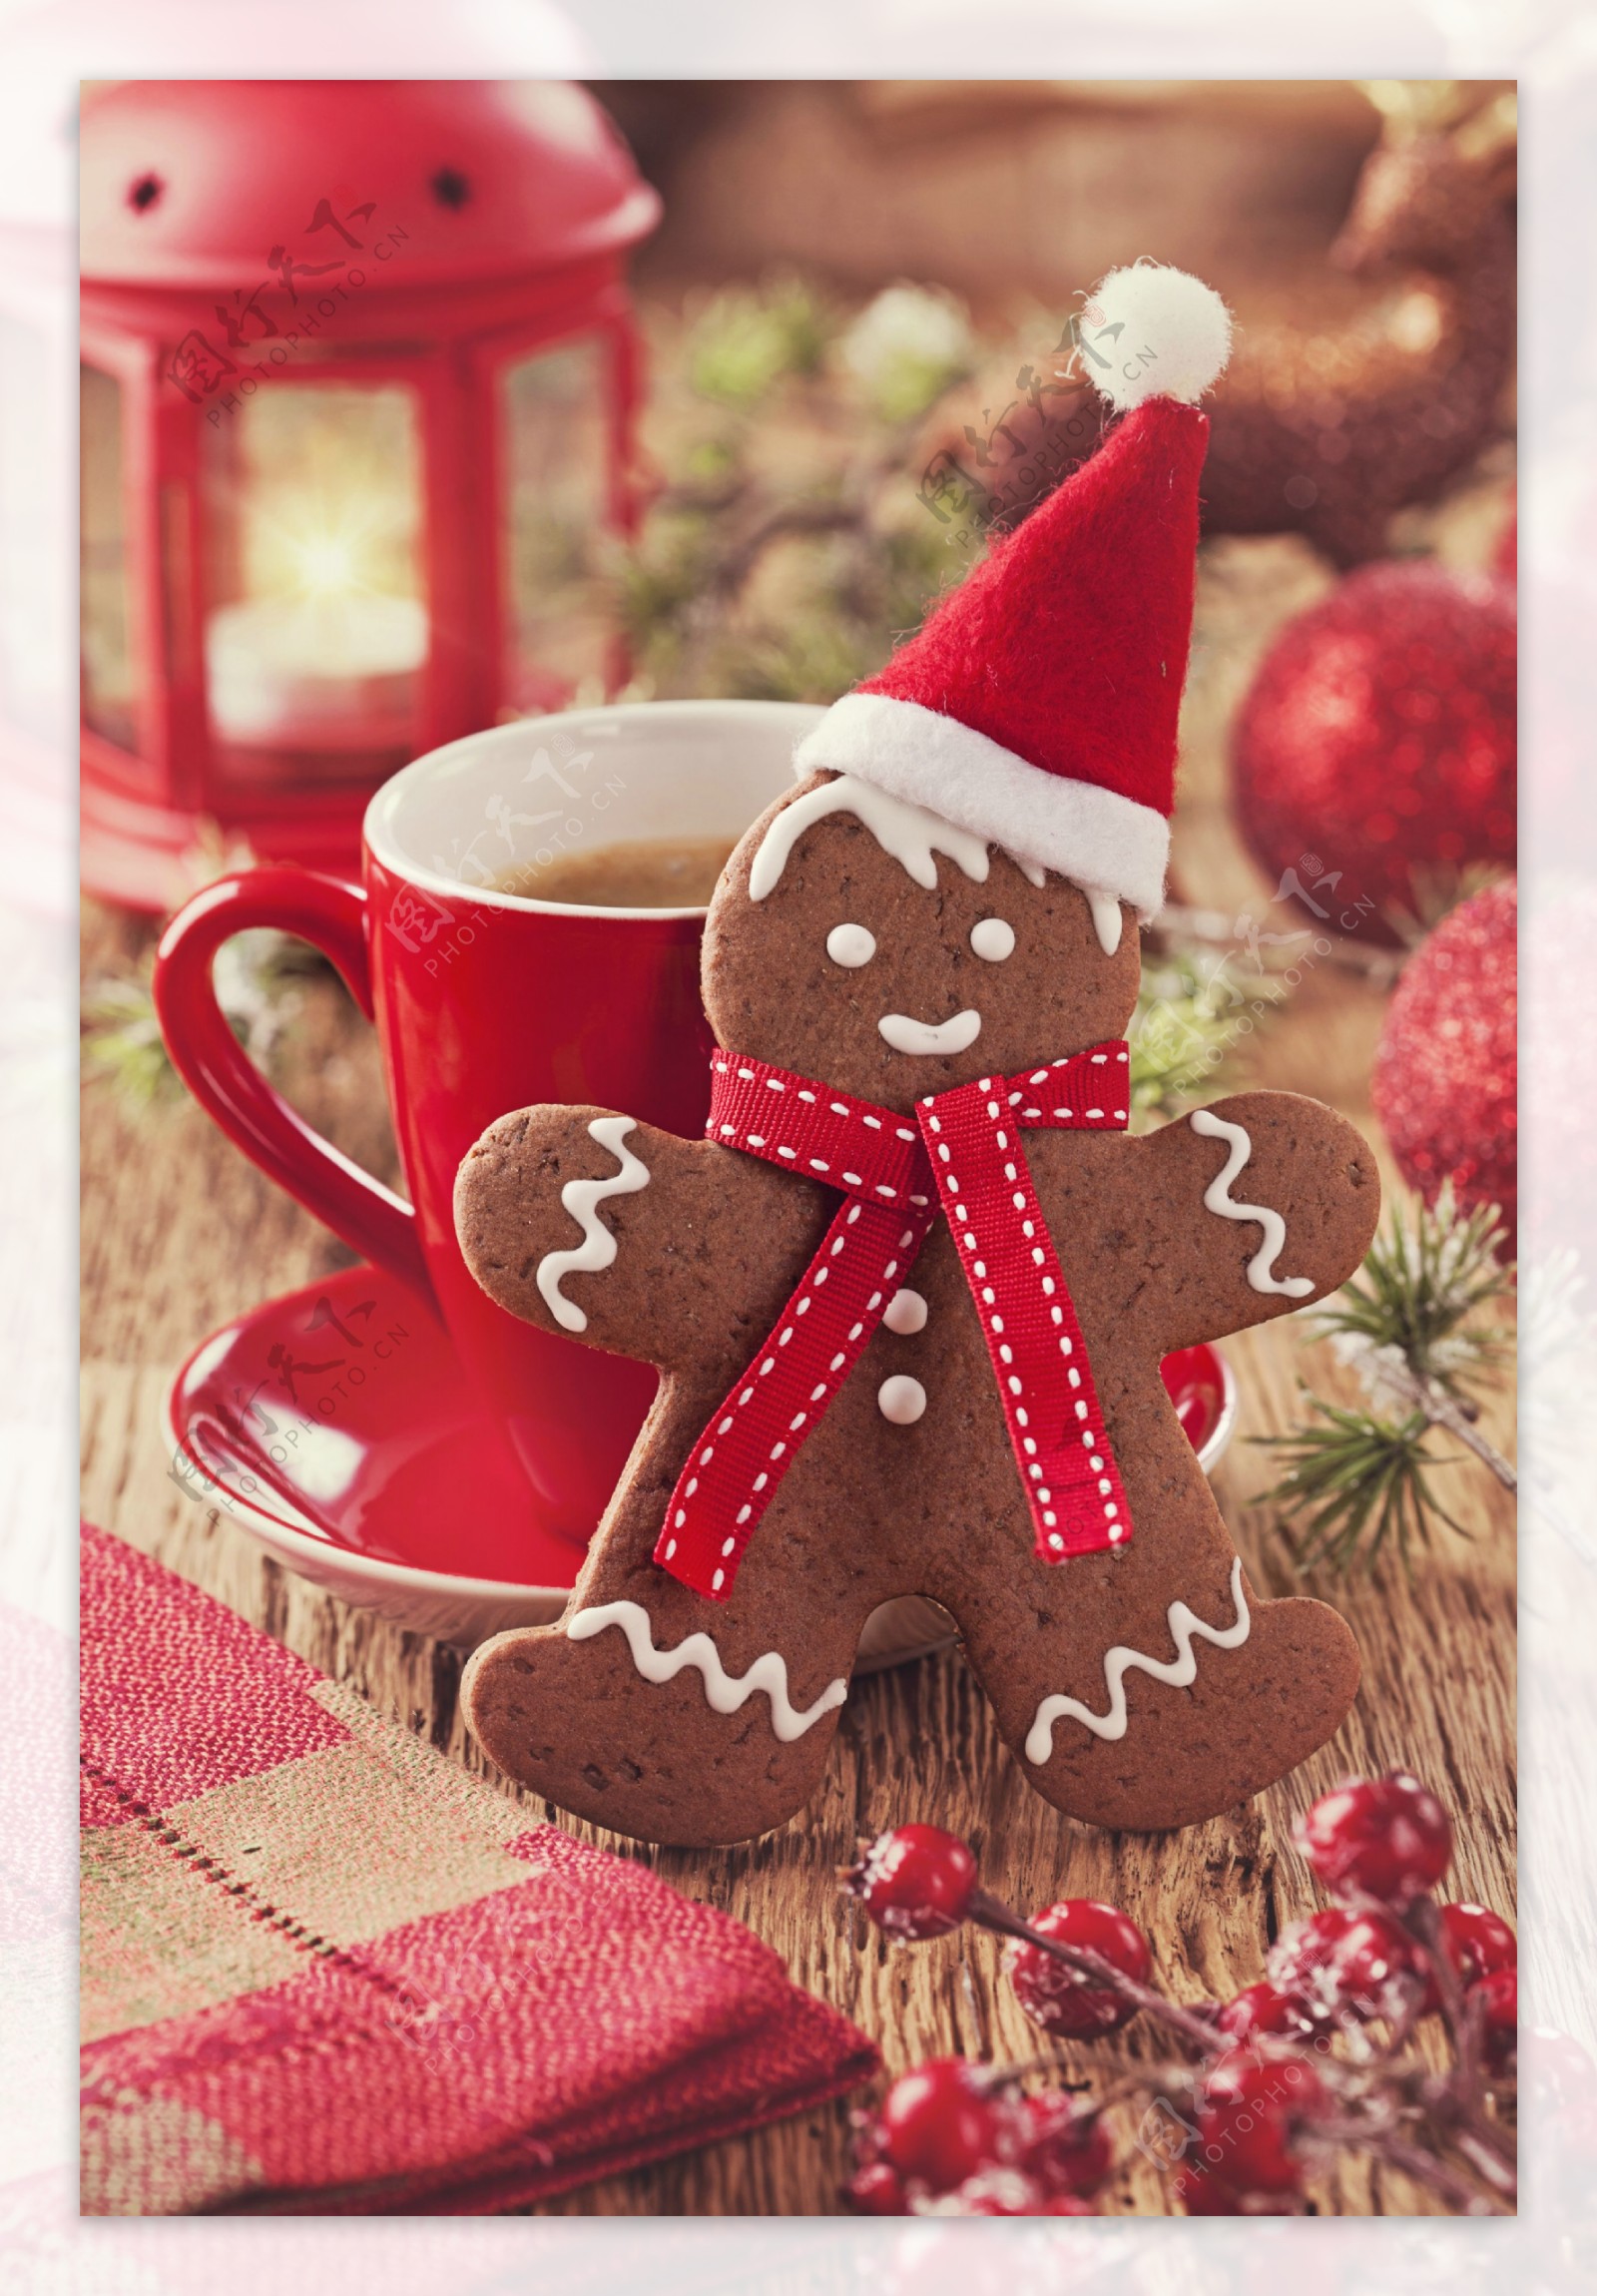 圣诞饼干和咖啡杯图片